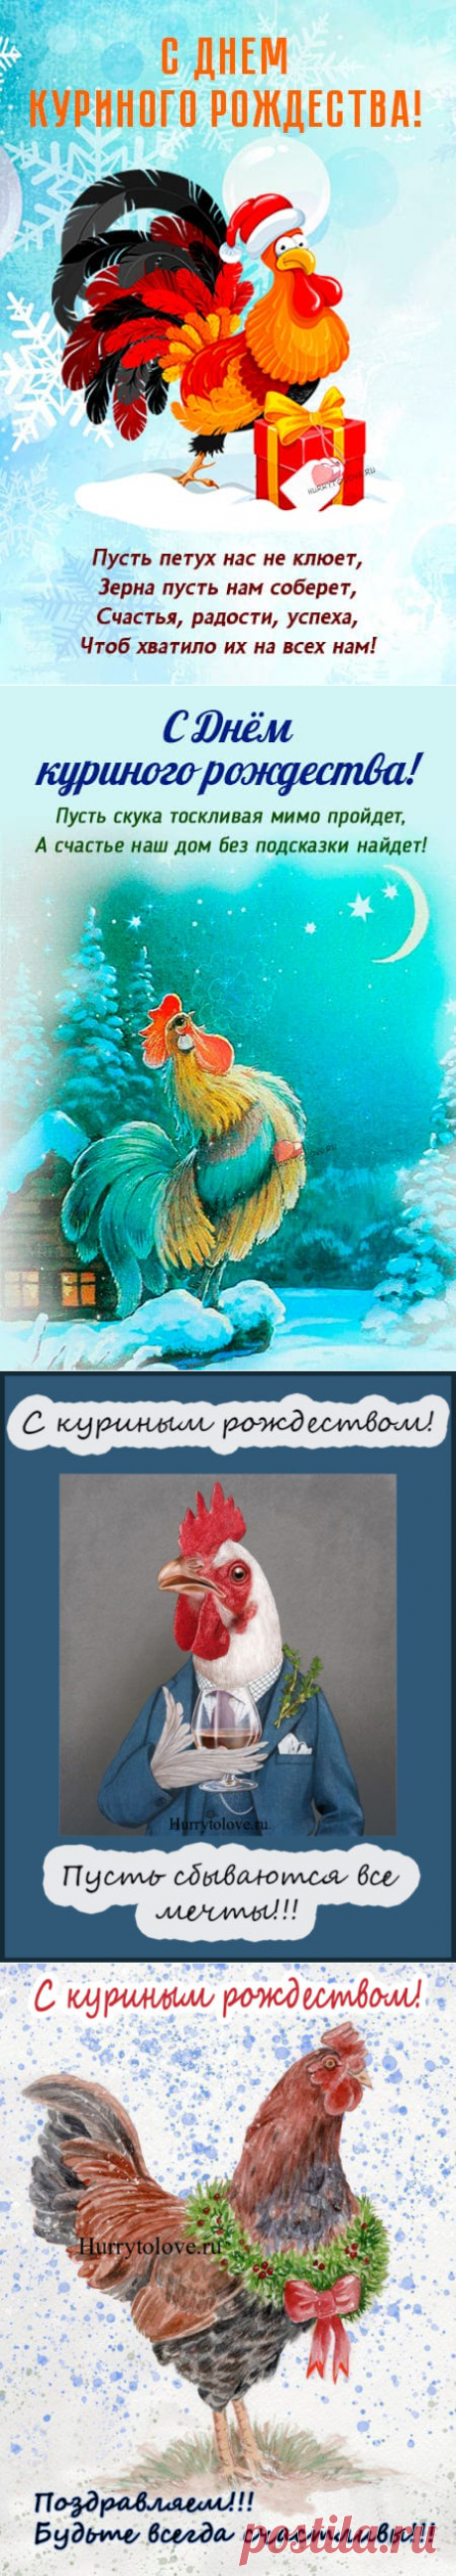 Картинки на день куриного рождества: прикольные поздравления в открытках на 20 декабря